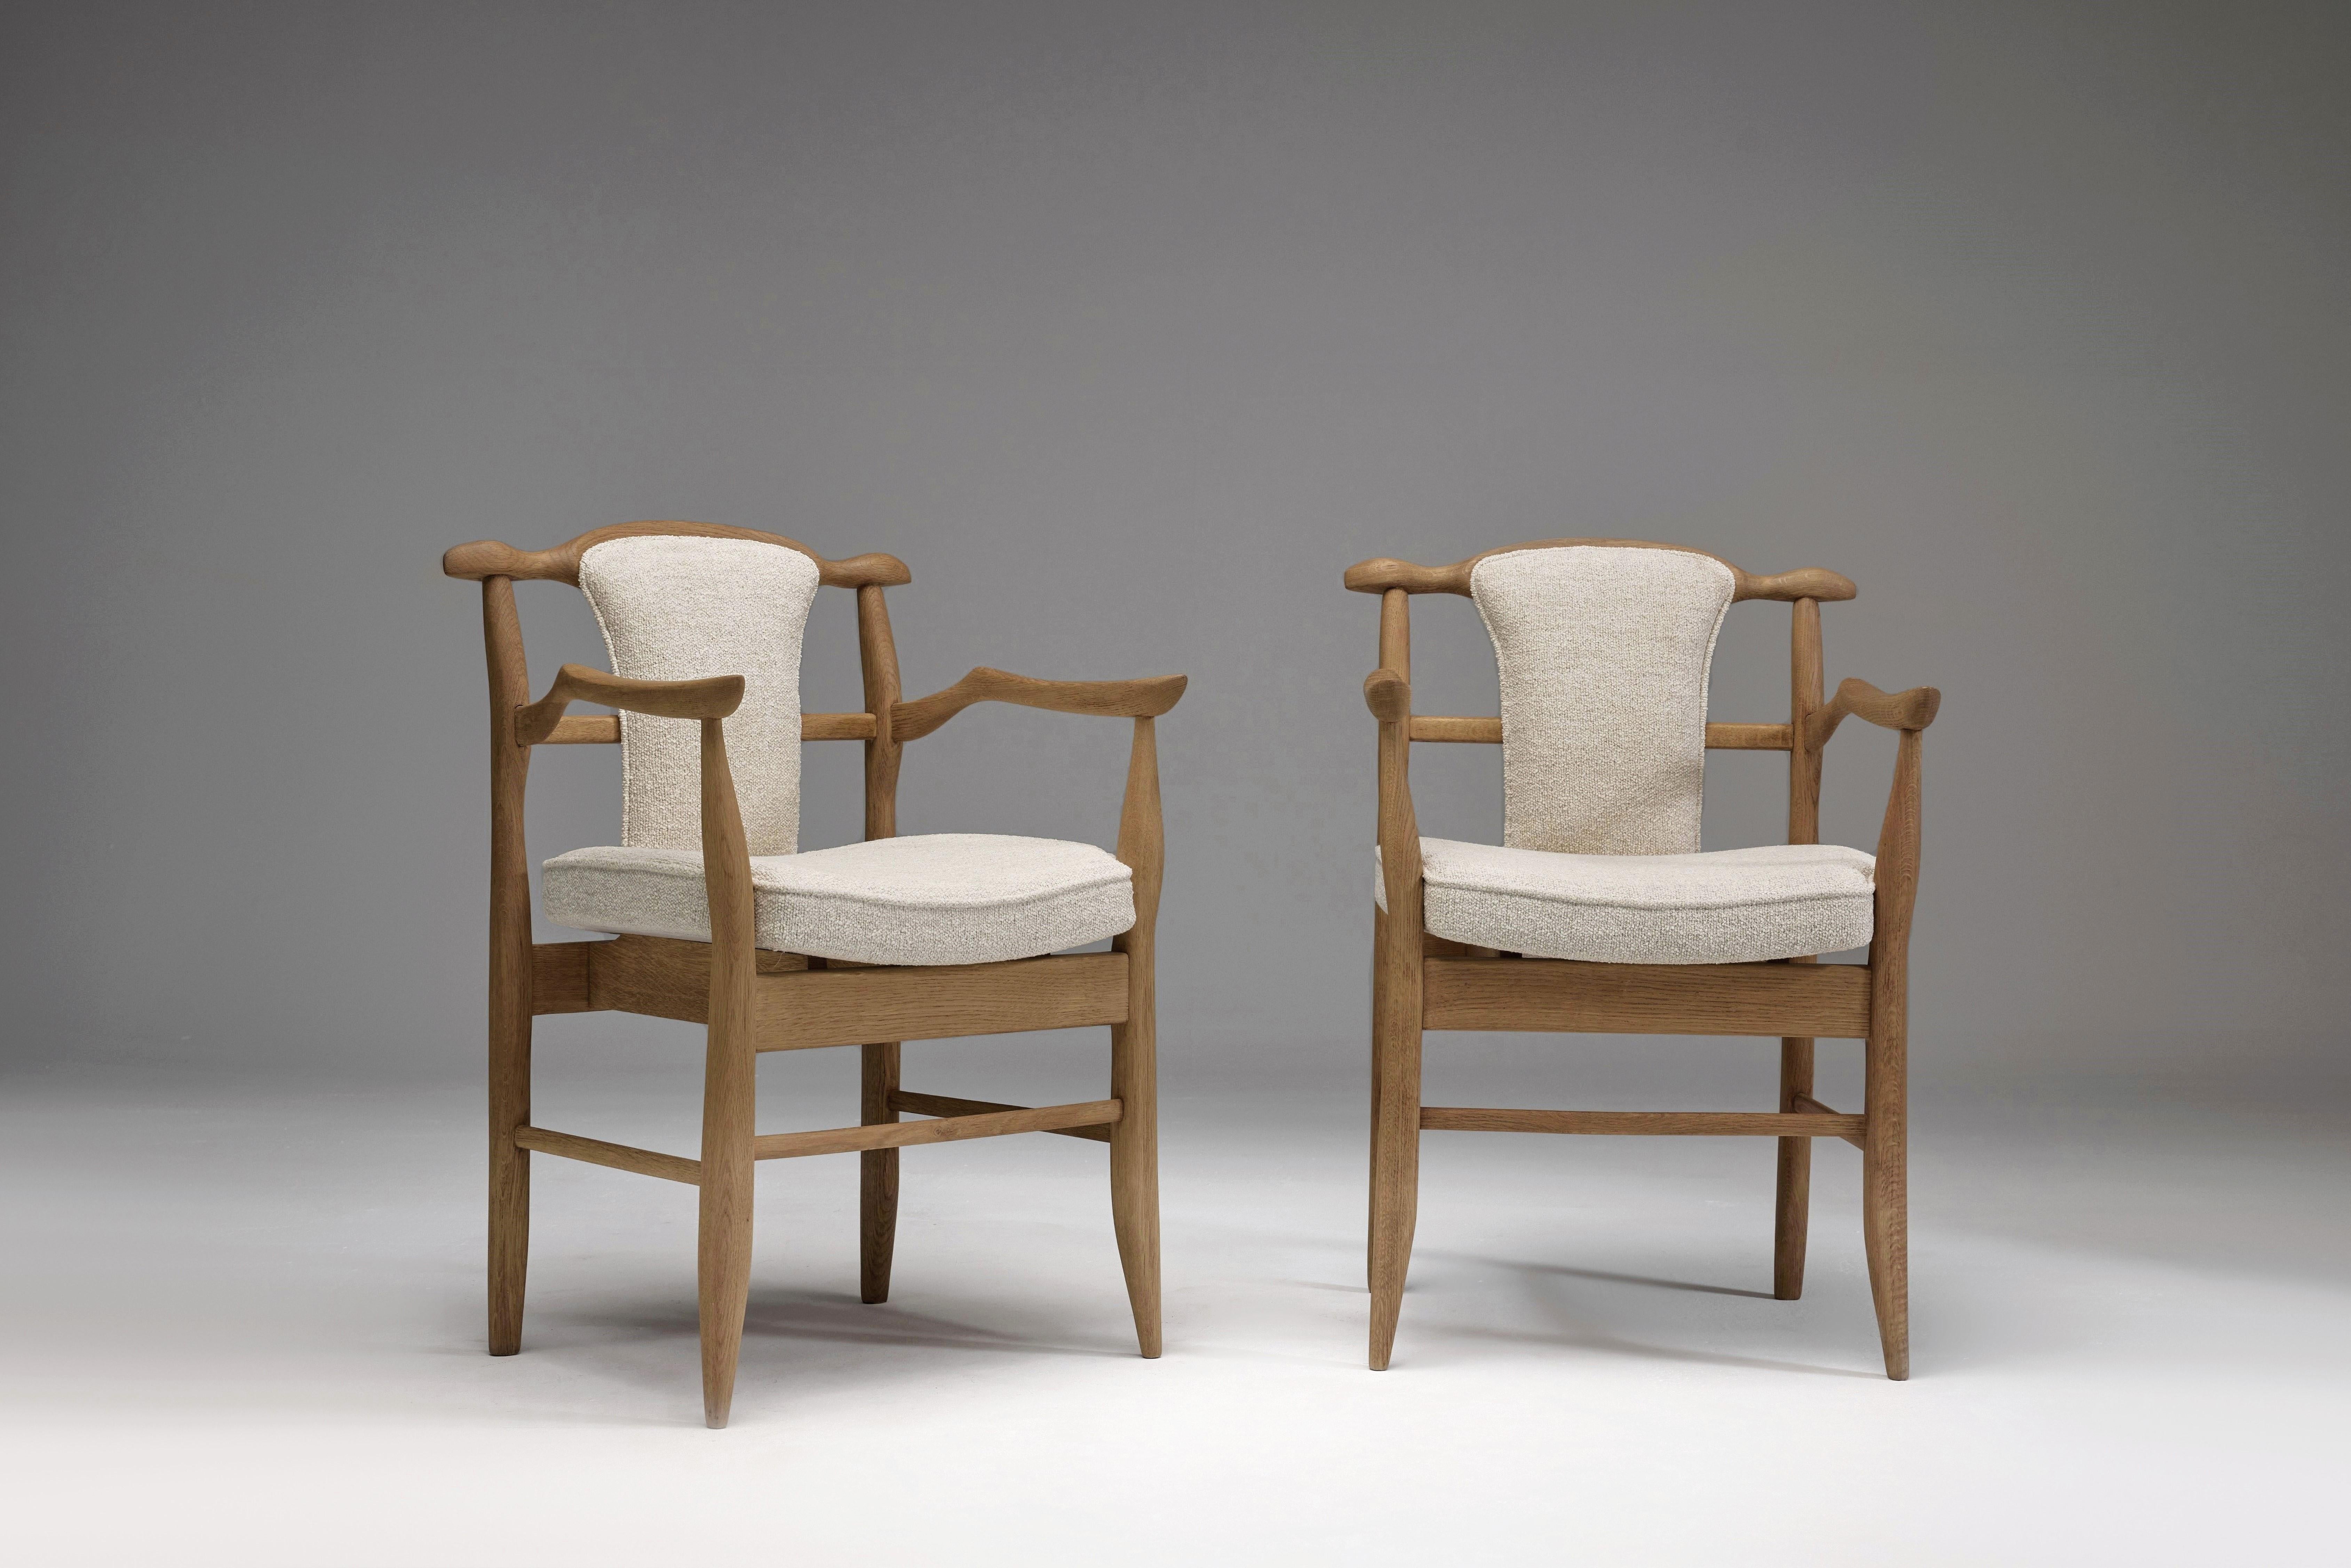 Très rare paire de chaises 'Fumay' avec dossier rembourré, conçues en 1965 par le duo français mondialement connu, Robert Guillerme et Jacques Chambron. 

 Cette paire de fauteuils en chêne massif 